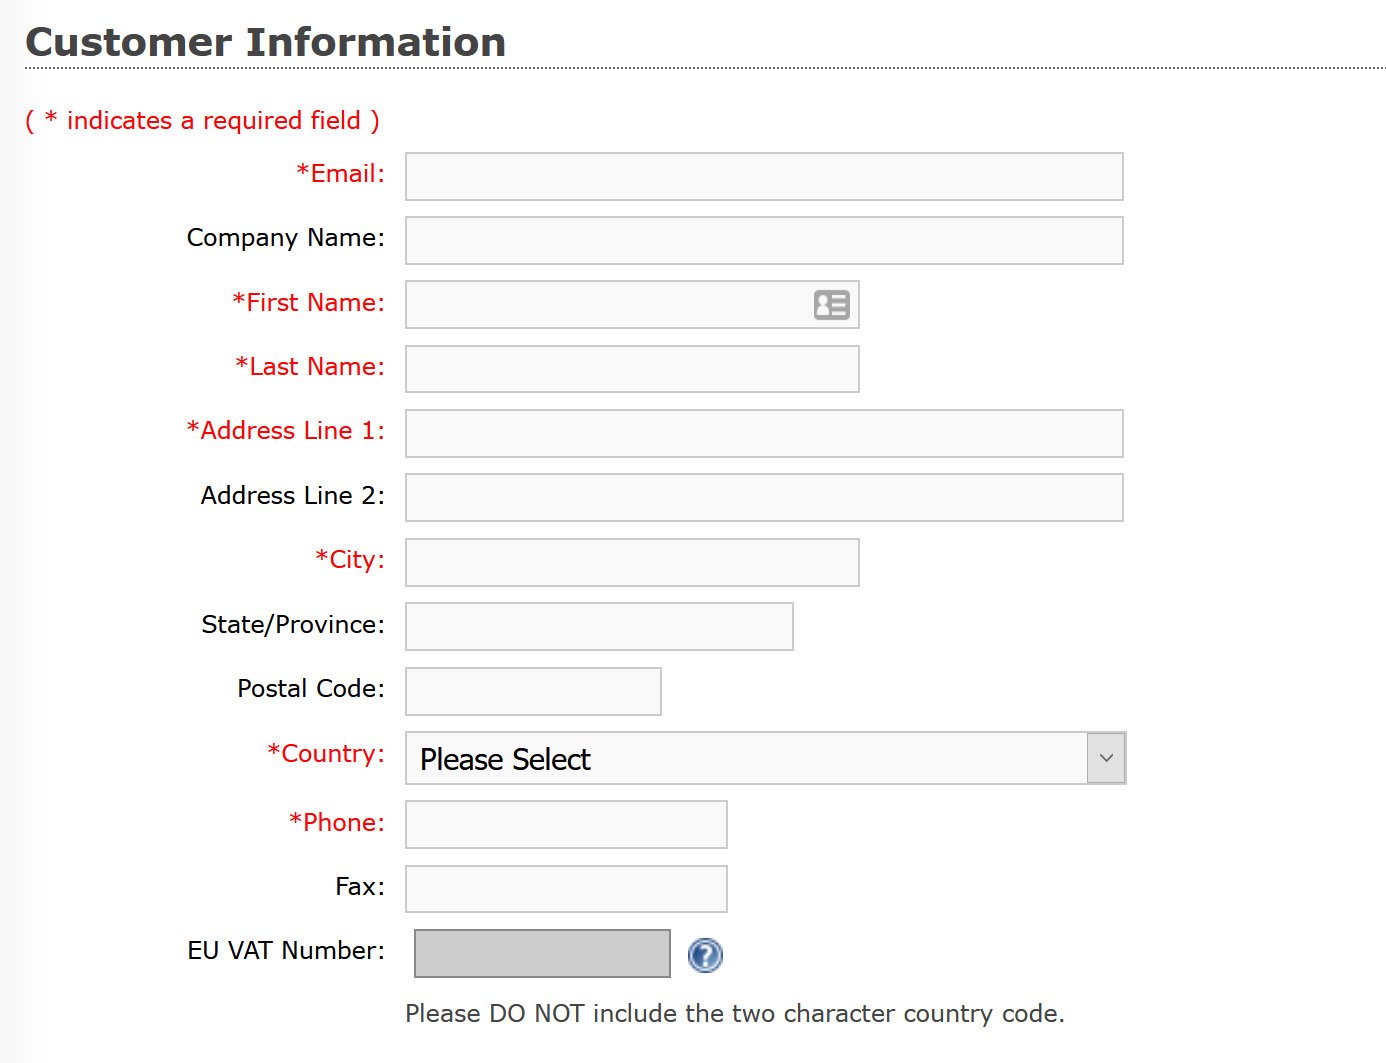 Customer Information form